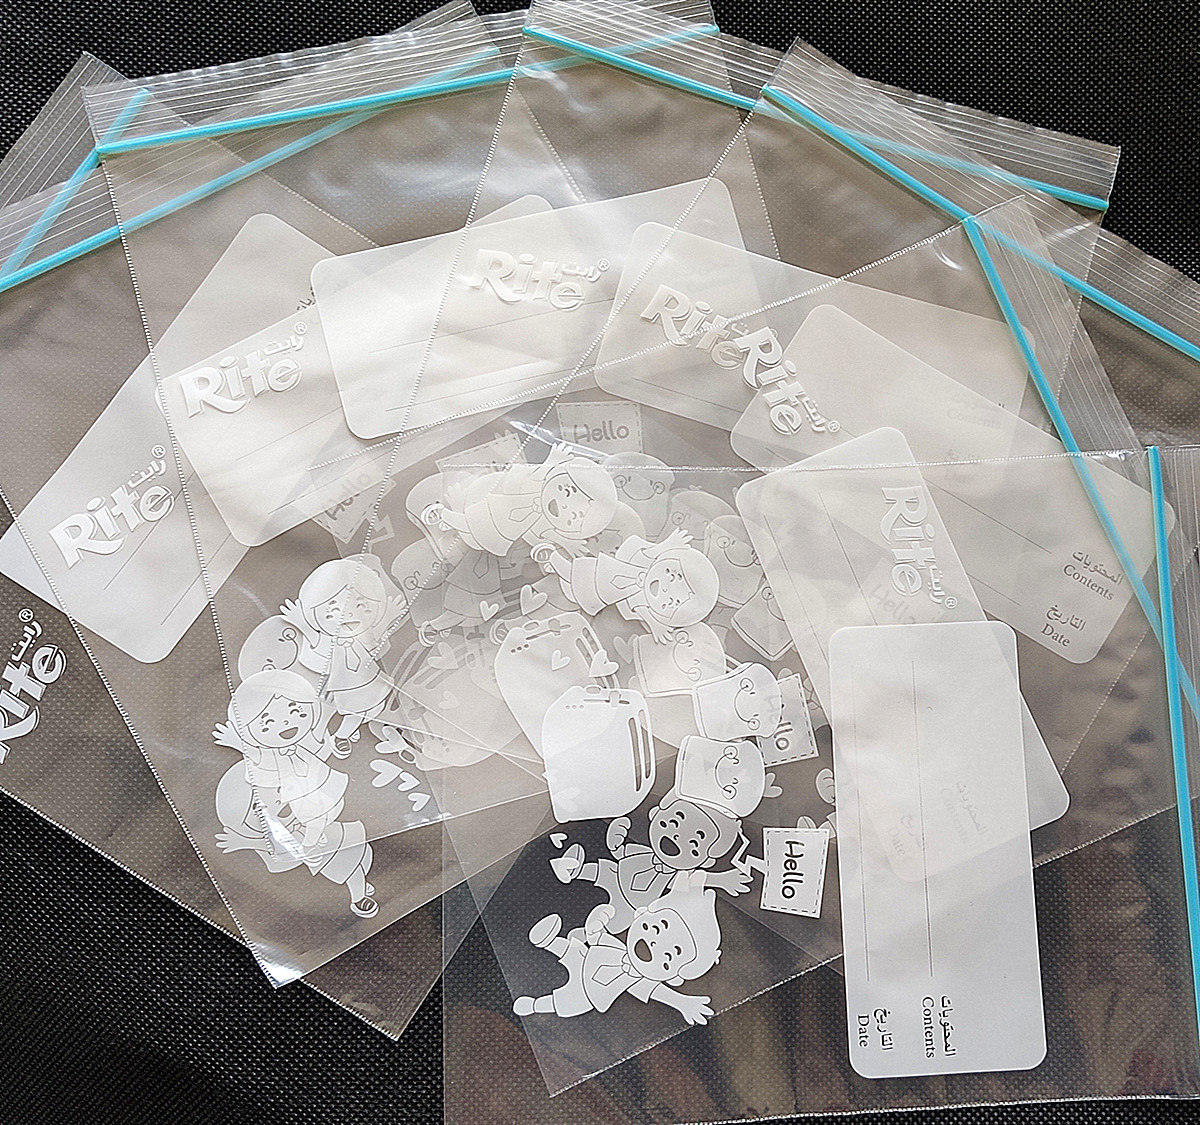 LDPE transparent custom printed zipper plastic bags biodegradable ziplock bags